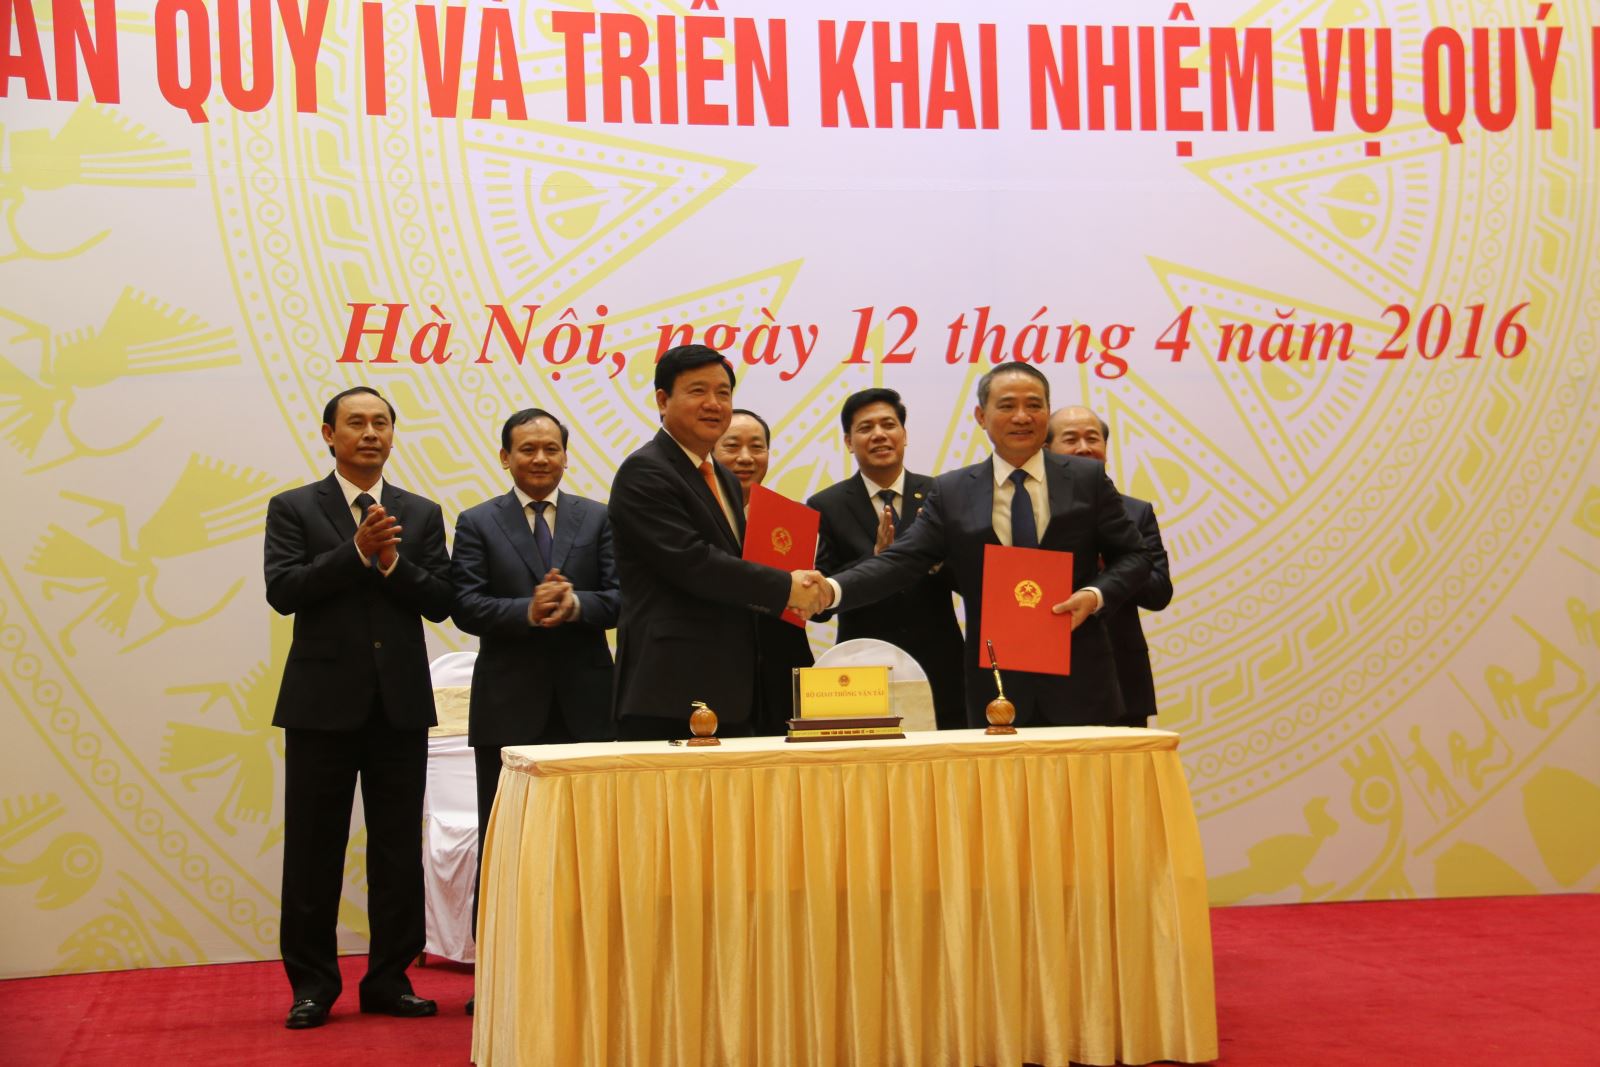 Ông Trương Quang Nghĩa chính thức nhận nhiệm vụ làm Bộ trưởng Bộ GTVT